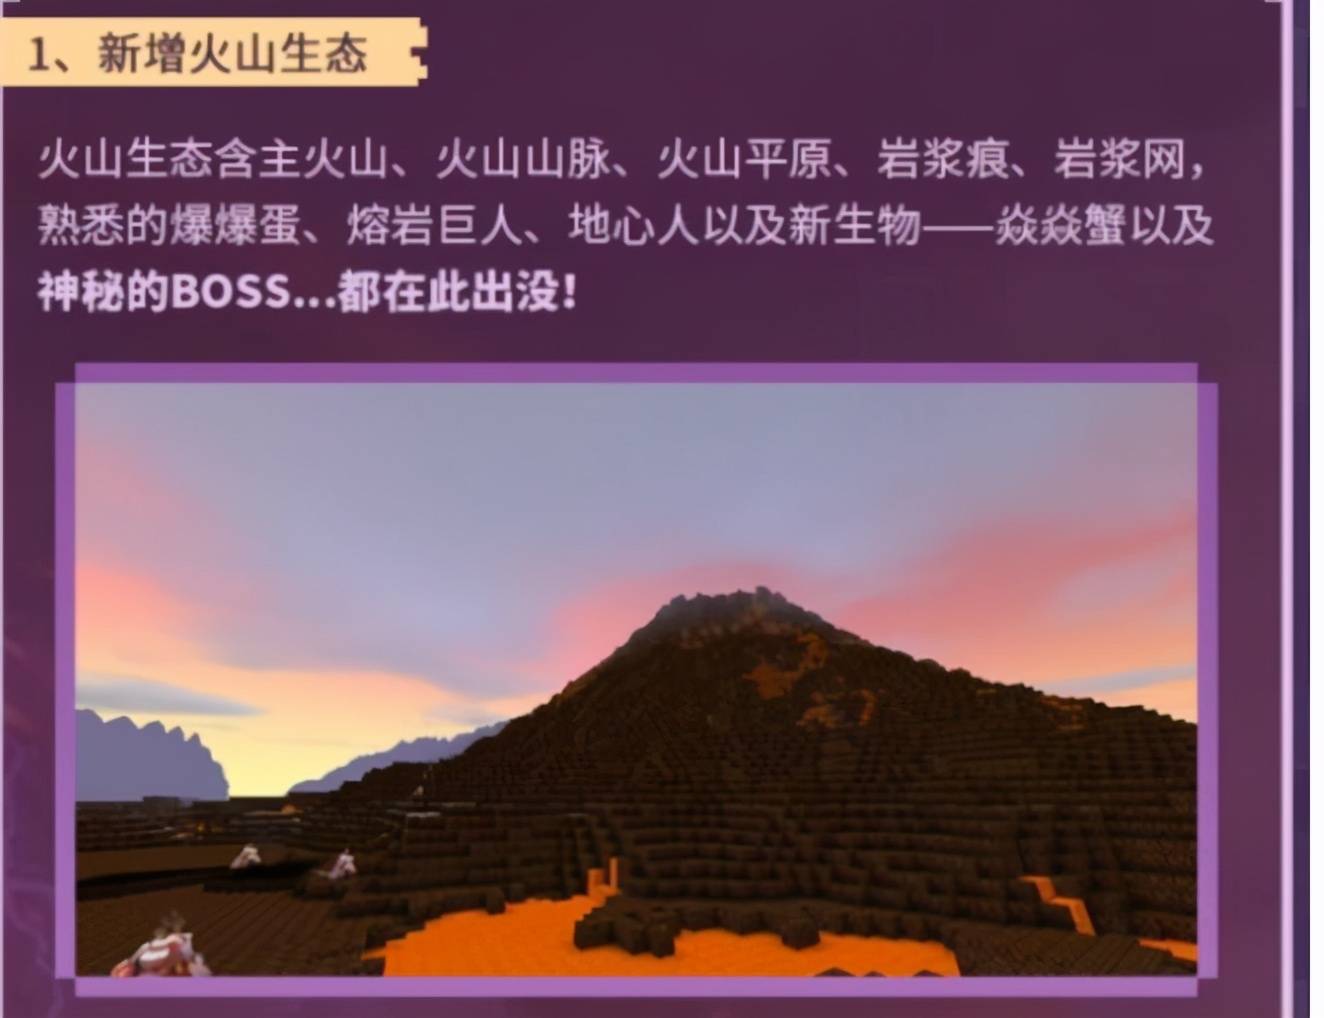 原创迷你世界10火山地形震撼登场向玩家揭示迷你世界火爆原因